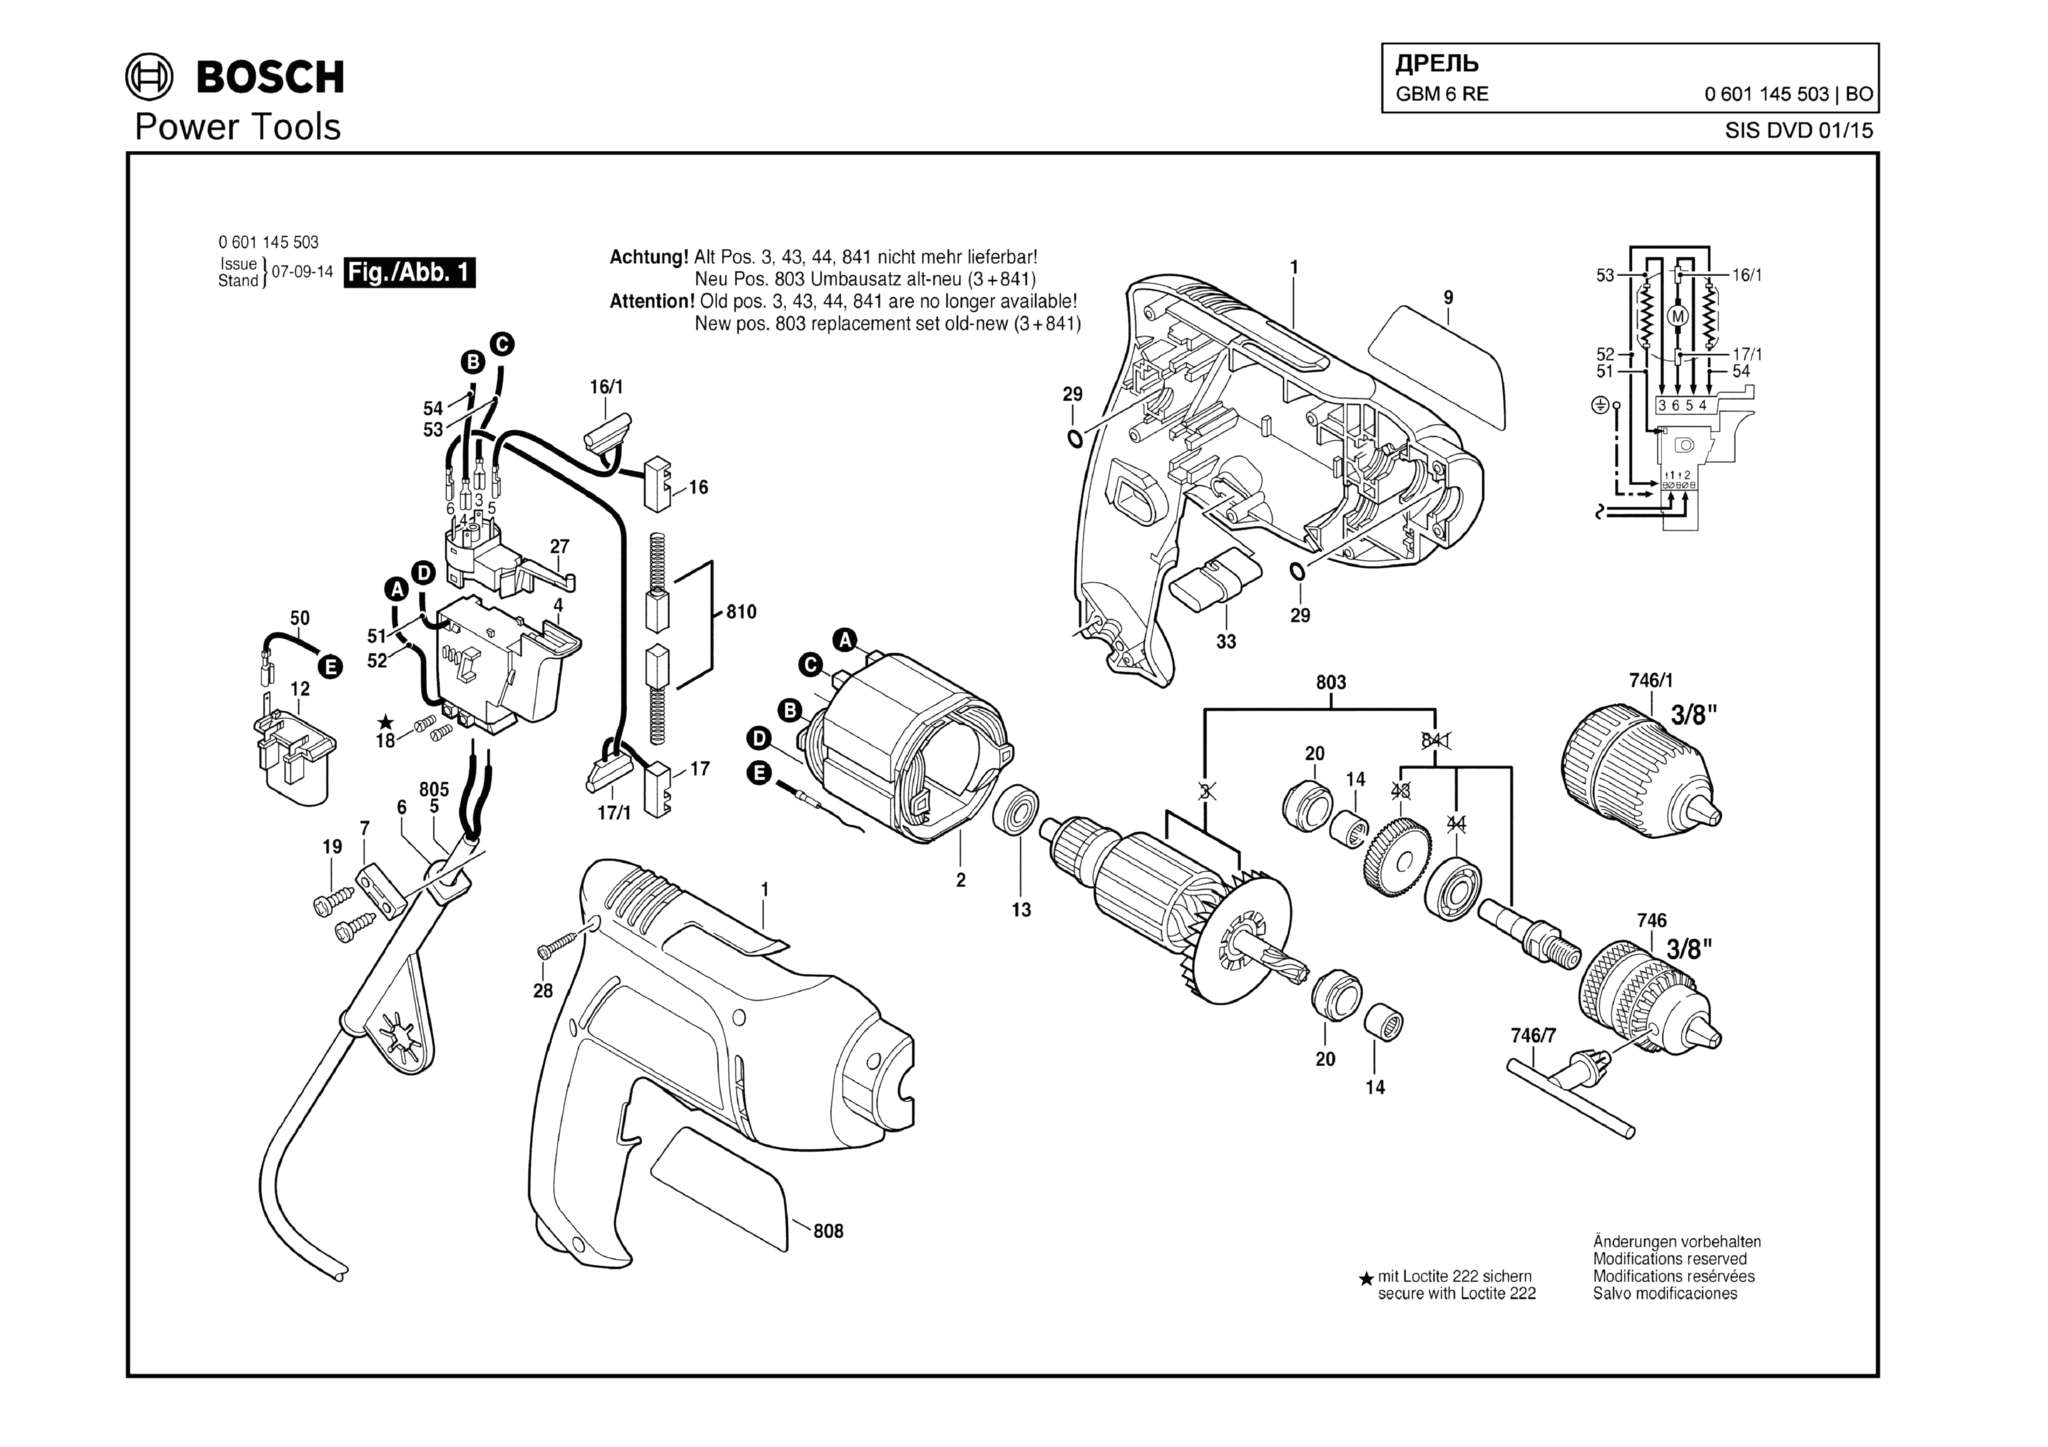 Запчасти, схема и деталировка Bosch GBM 6 RE (ТИП 0601145503)